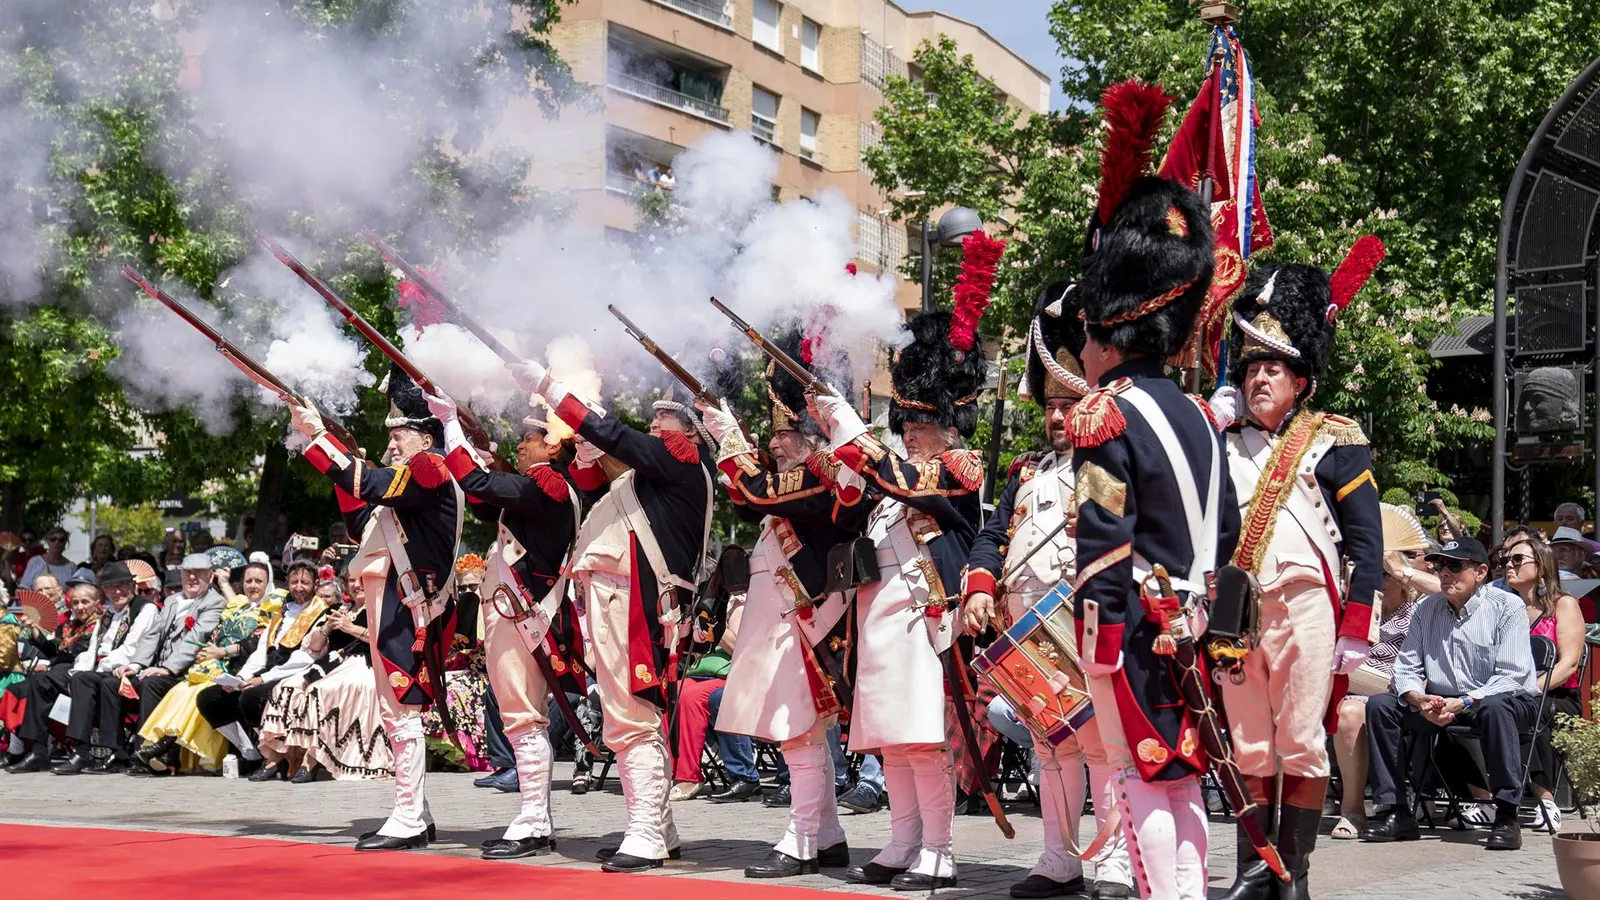 Descubre la agenda histórica y cultural de la Semana del Dos de Mayo en Madrid, llena de desfiles, recreaciones y eventos culturales.